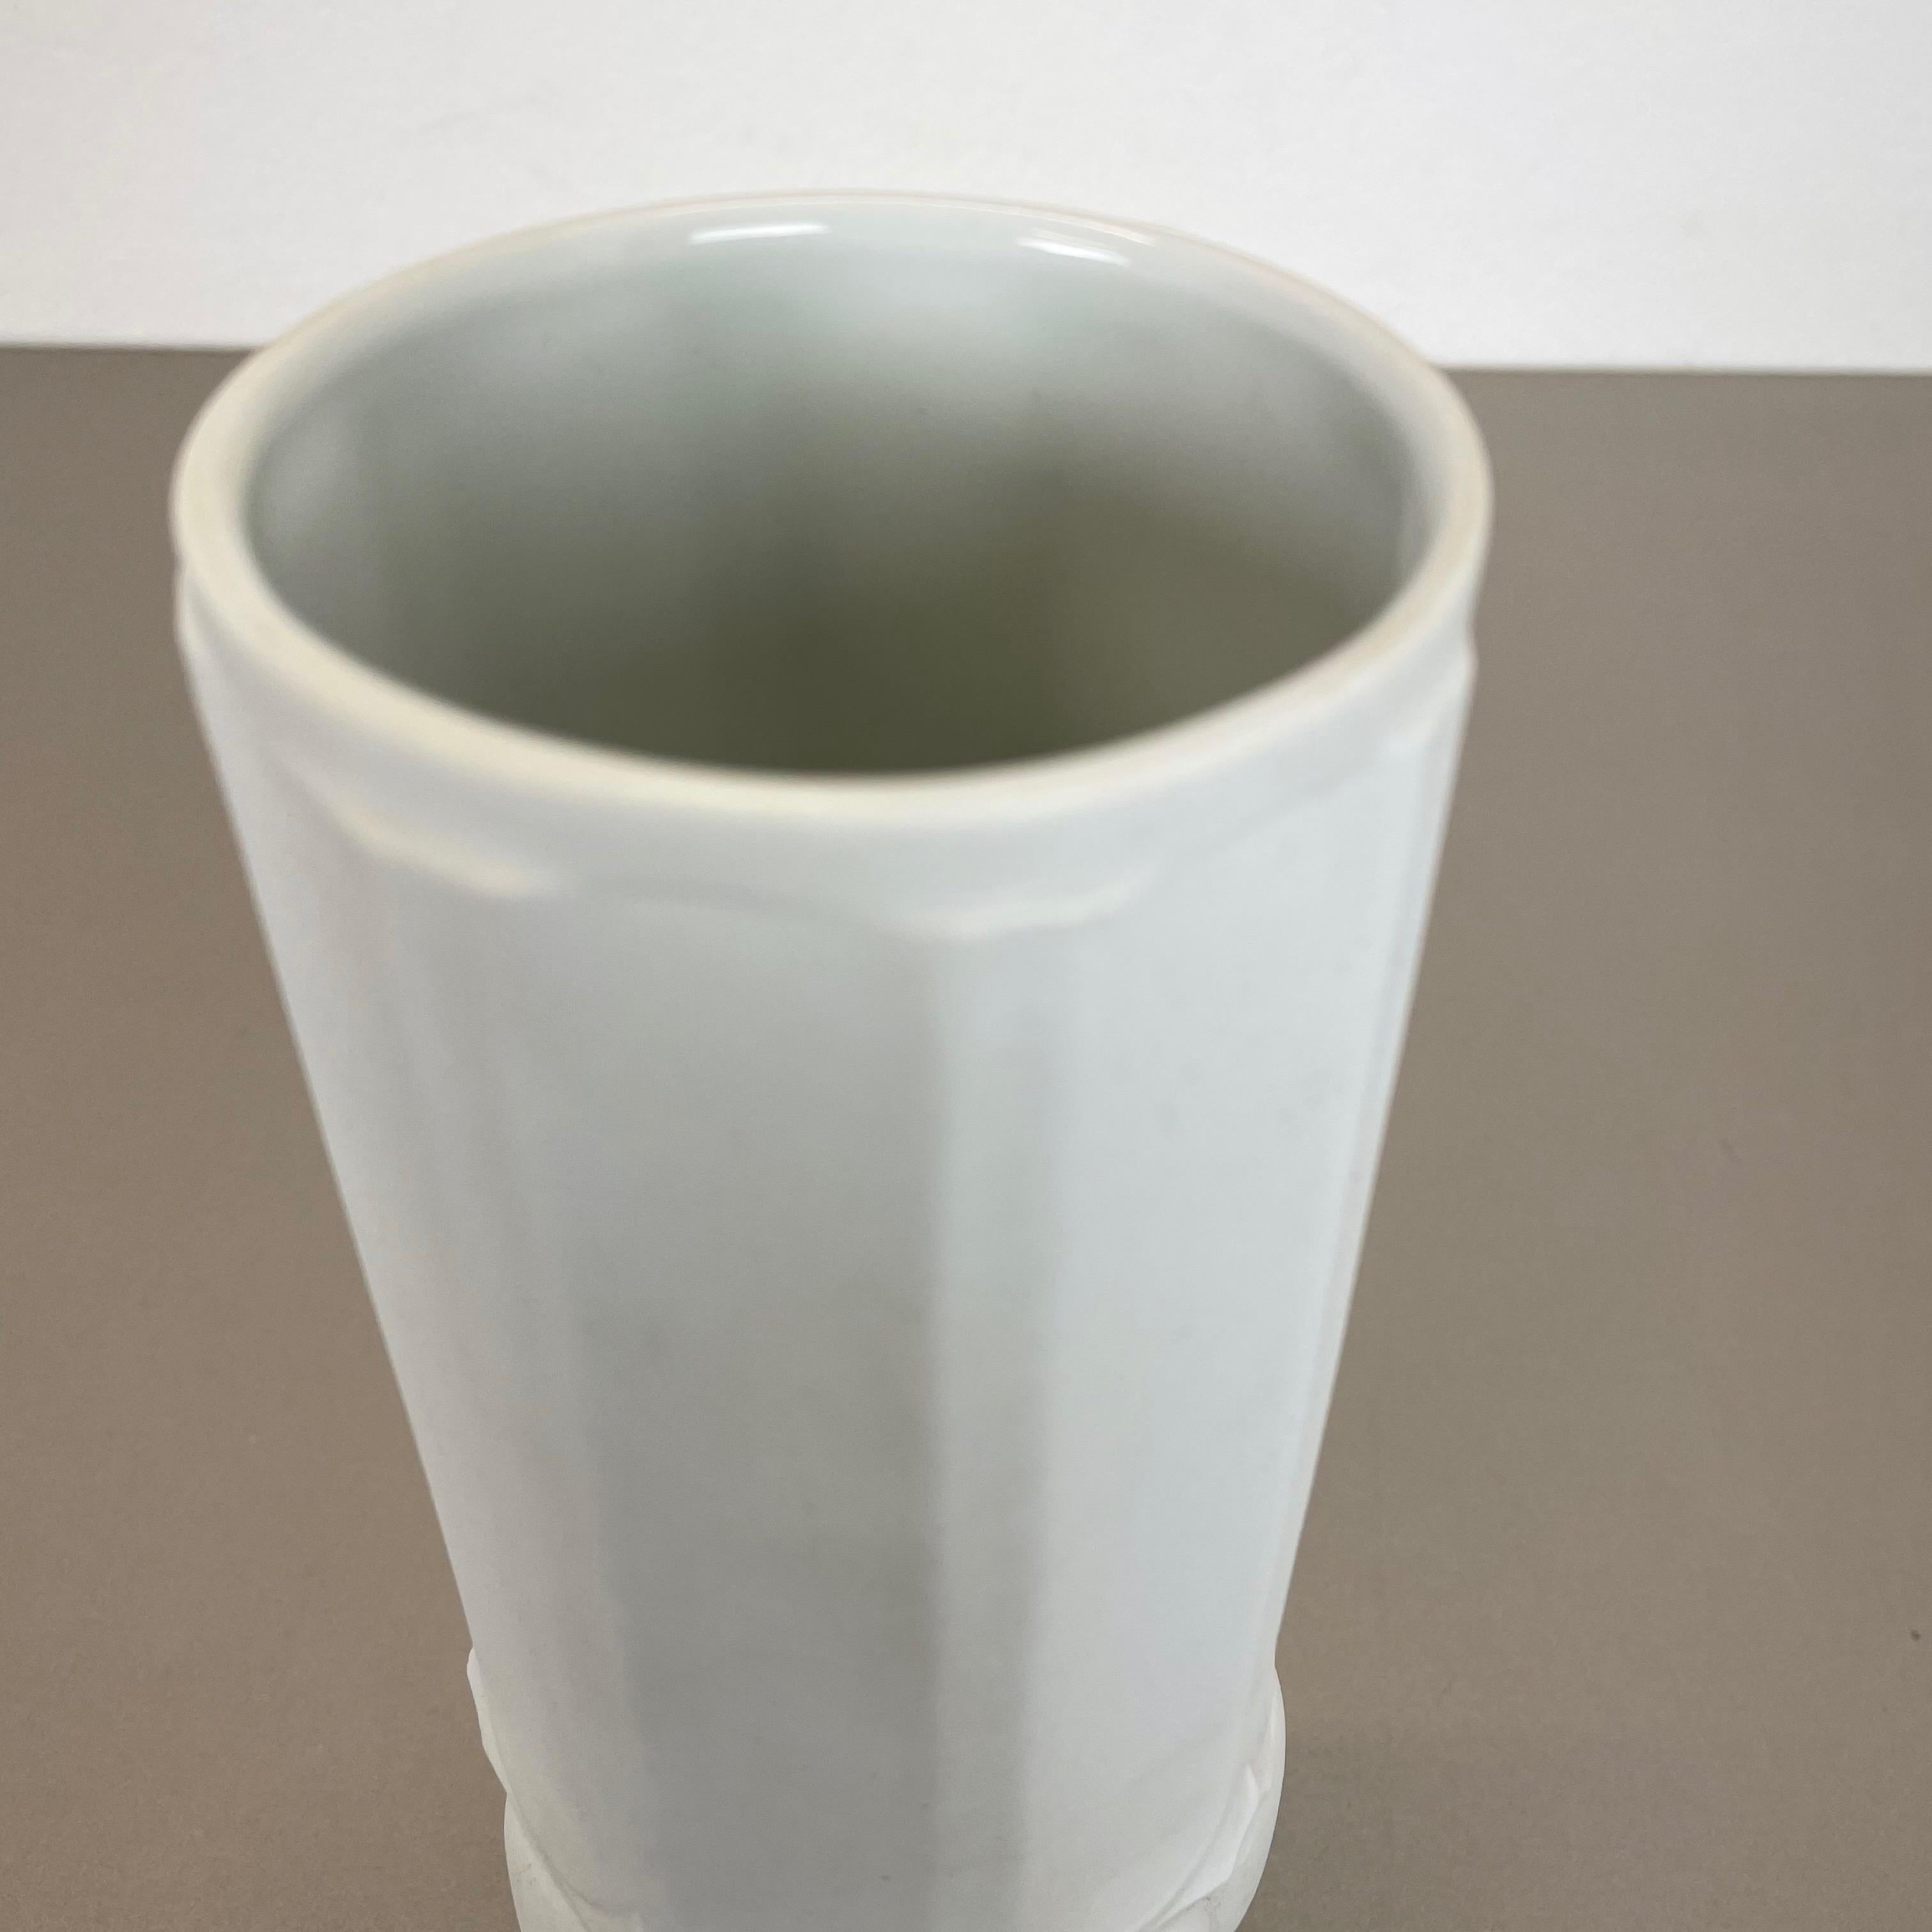 Original Large Porcelain OP Art Vase Made by Royal Bavaria KPM, Germany, 1970s For Sale 2